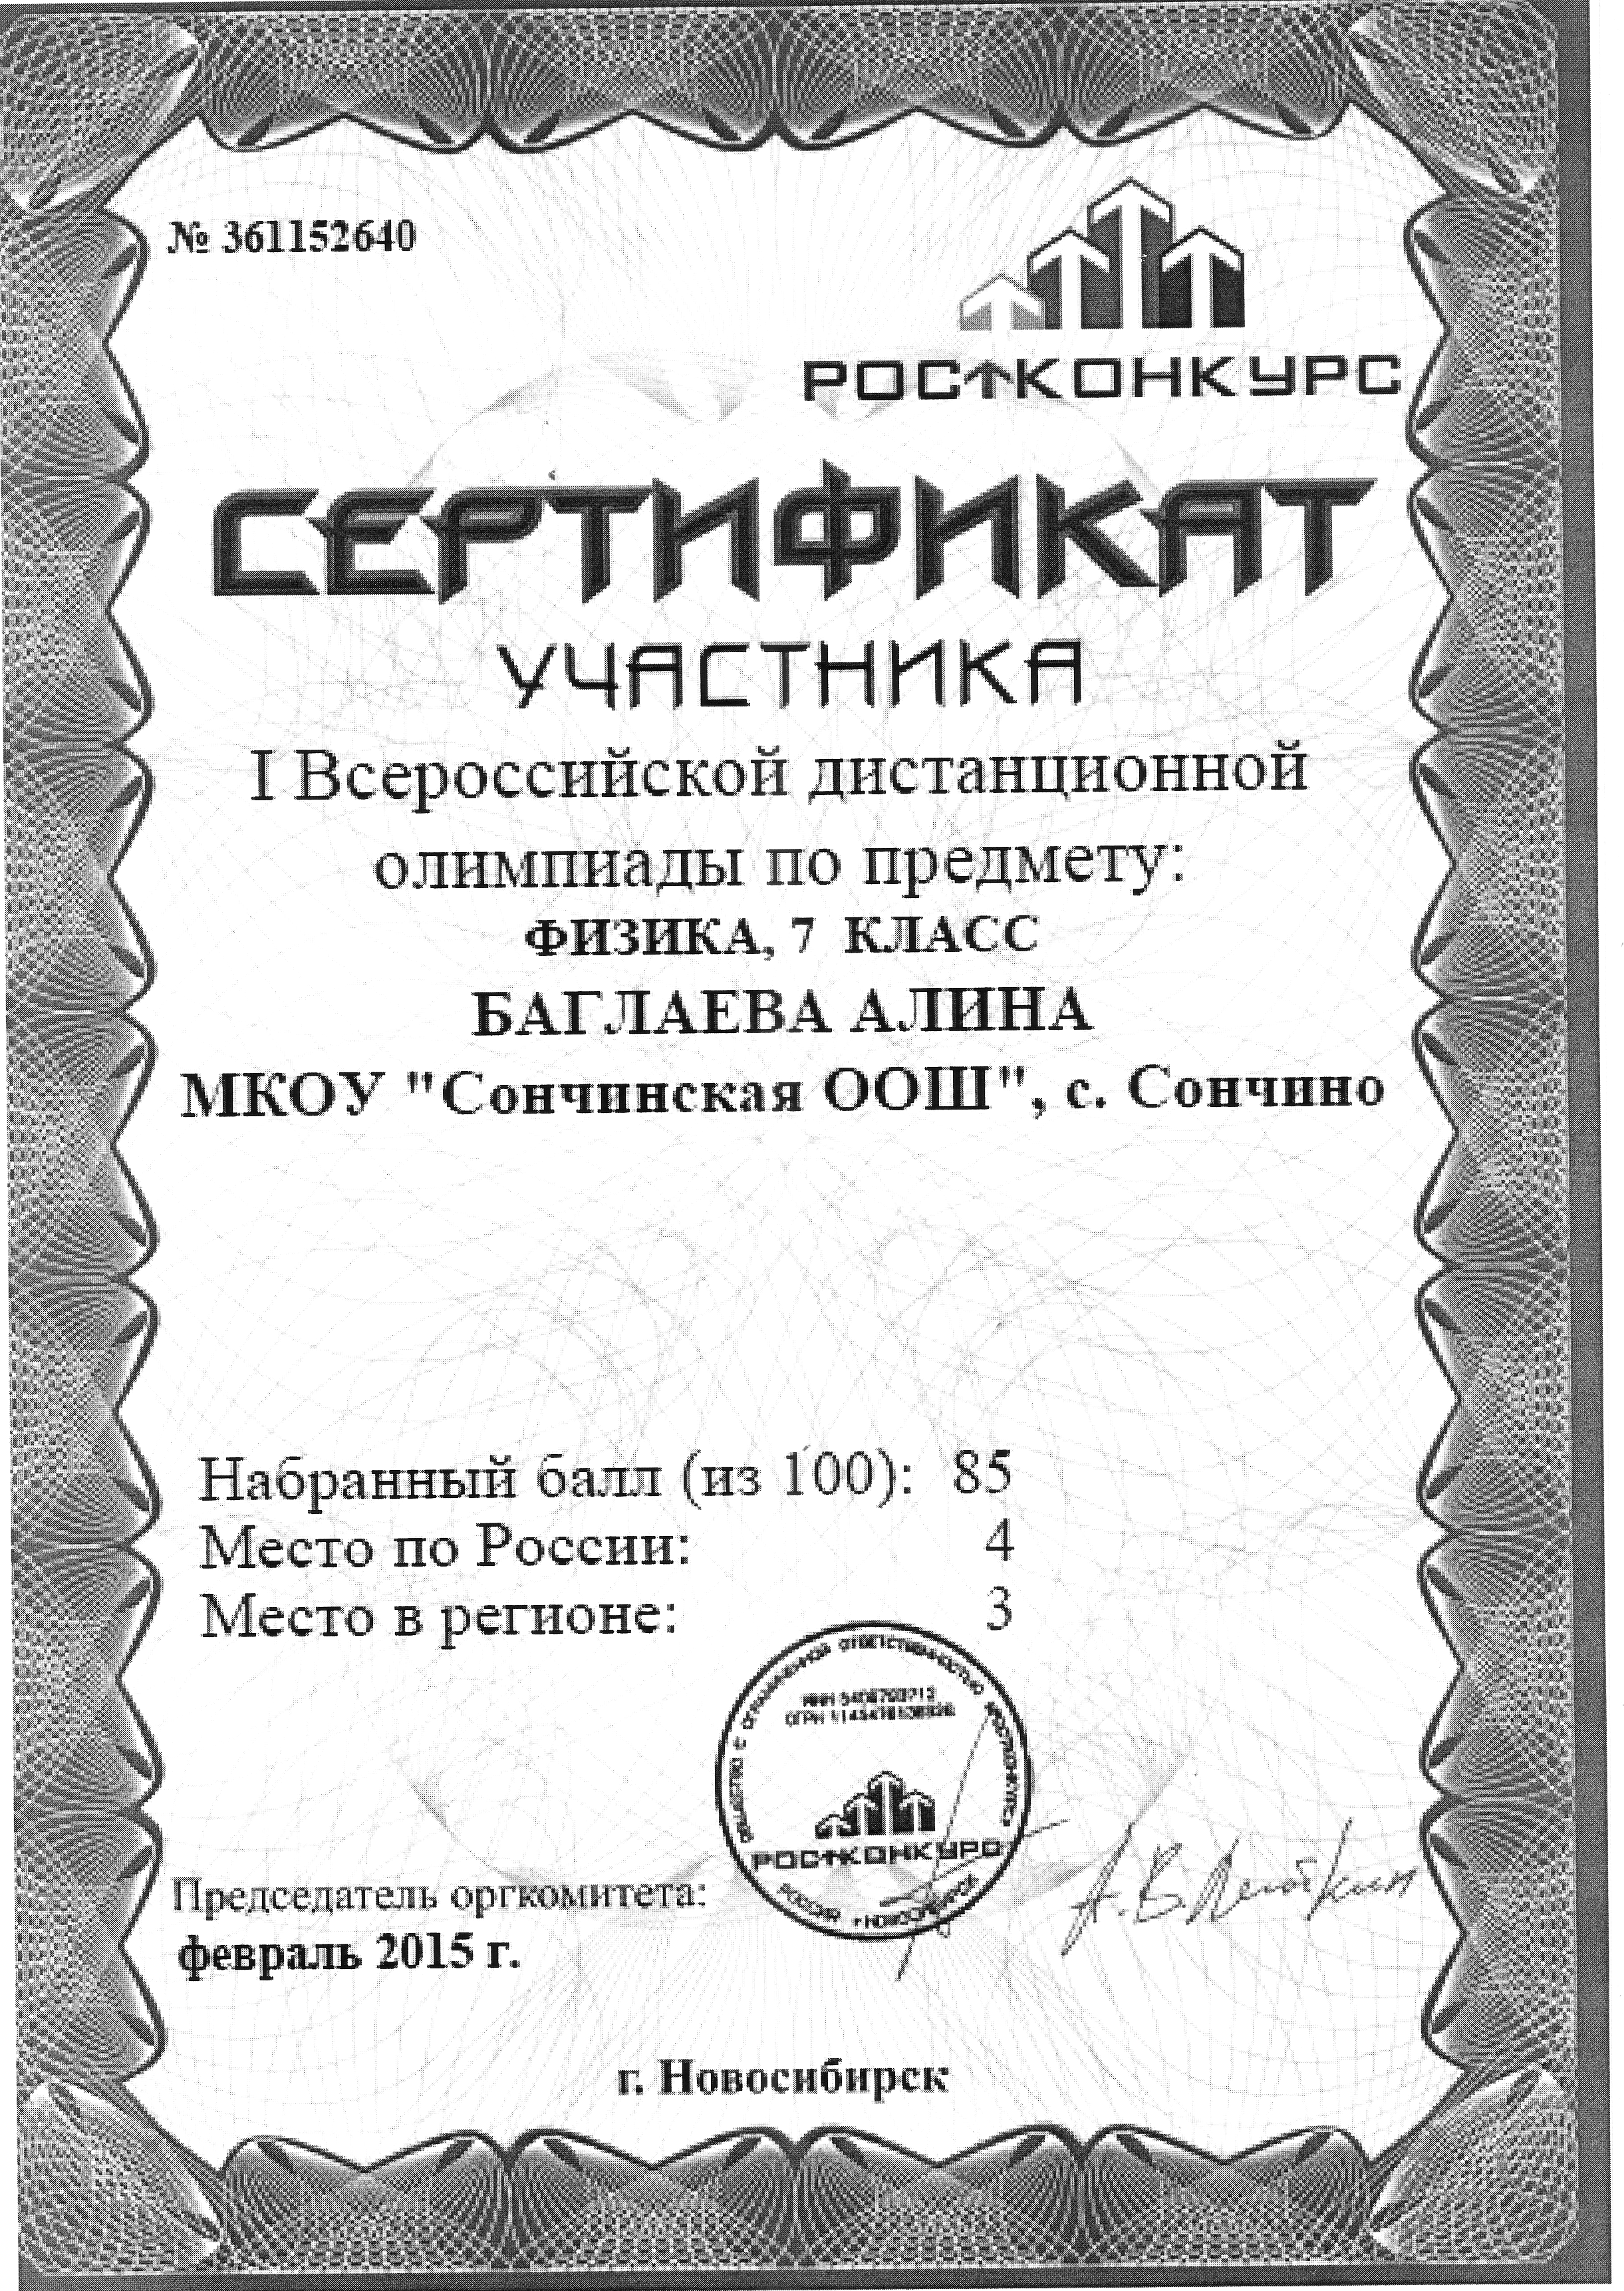 Сертификат олимпиады Ростконкурс по физике